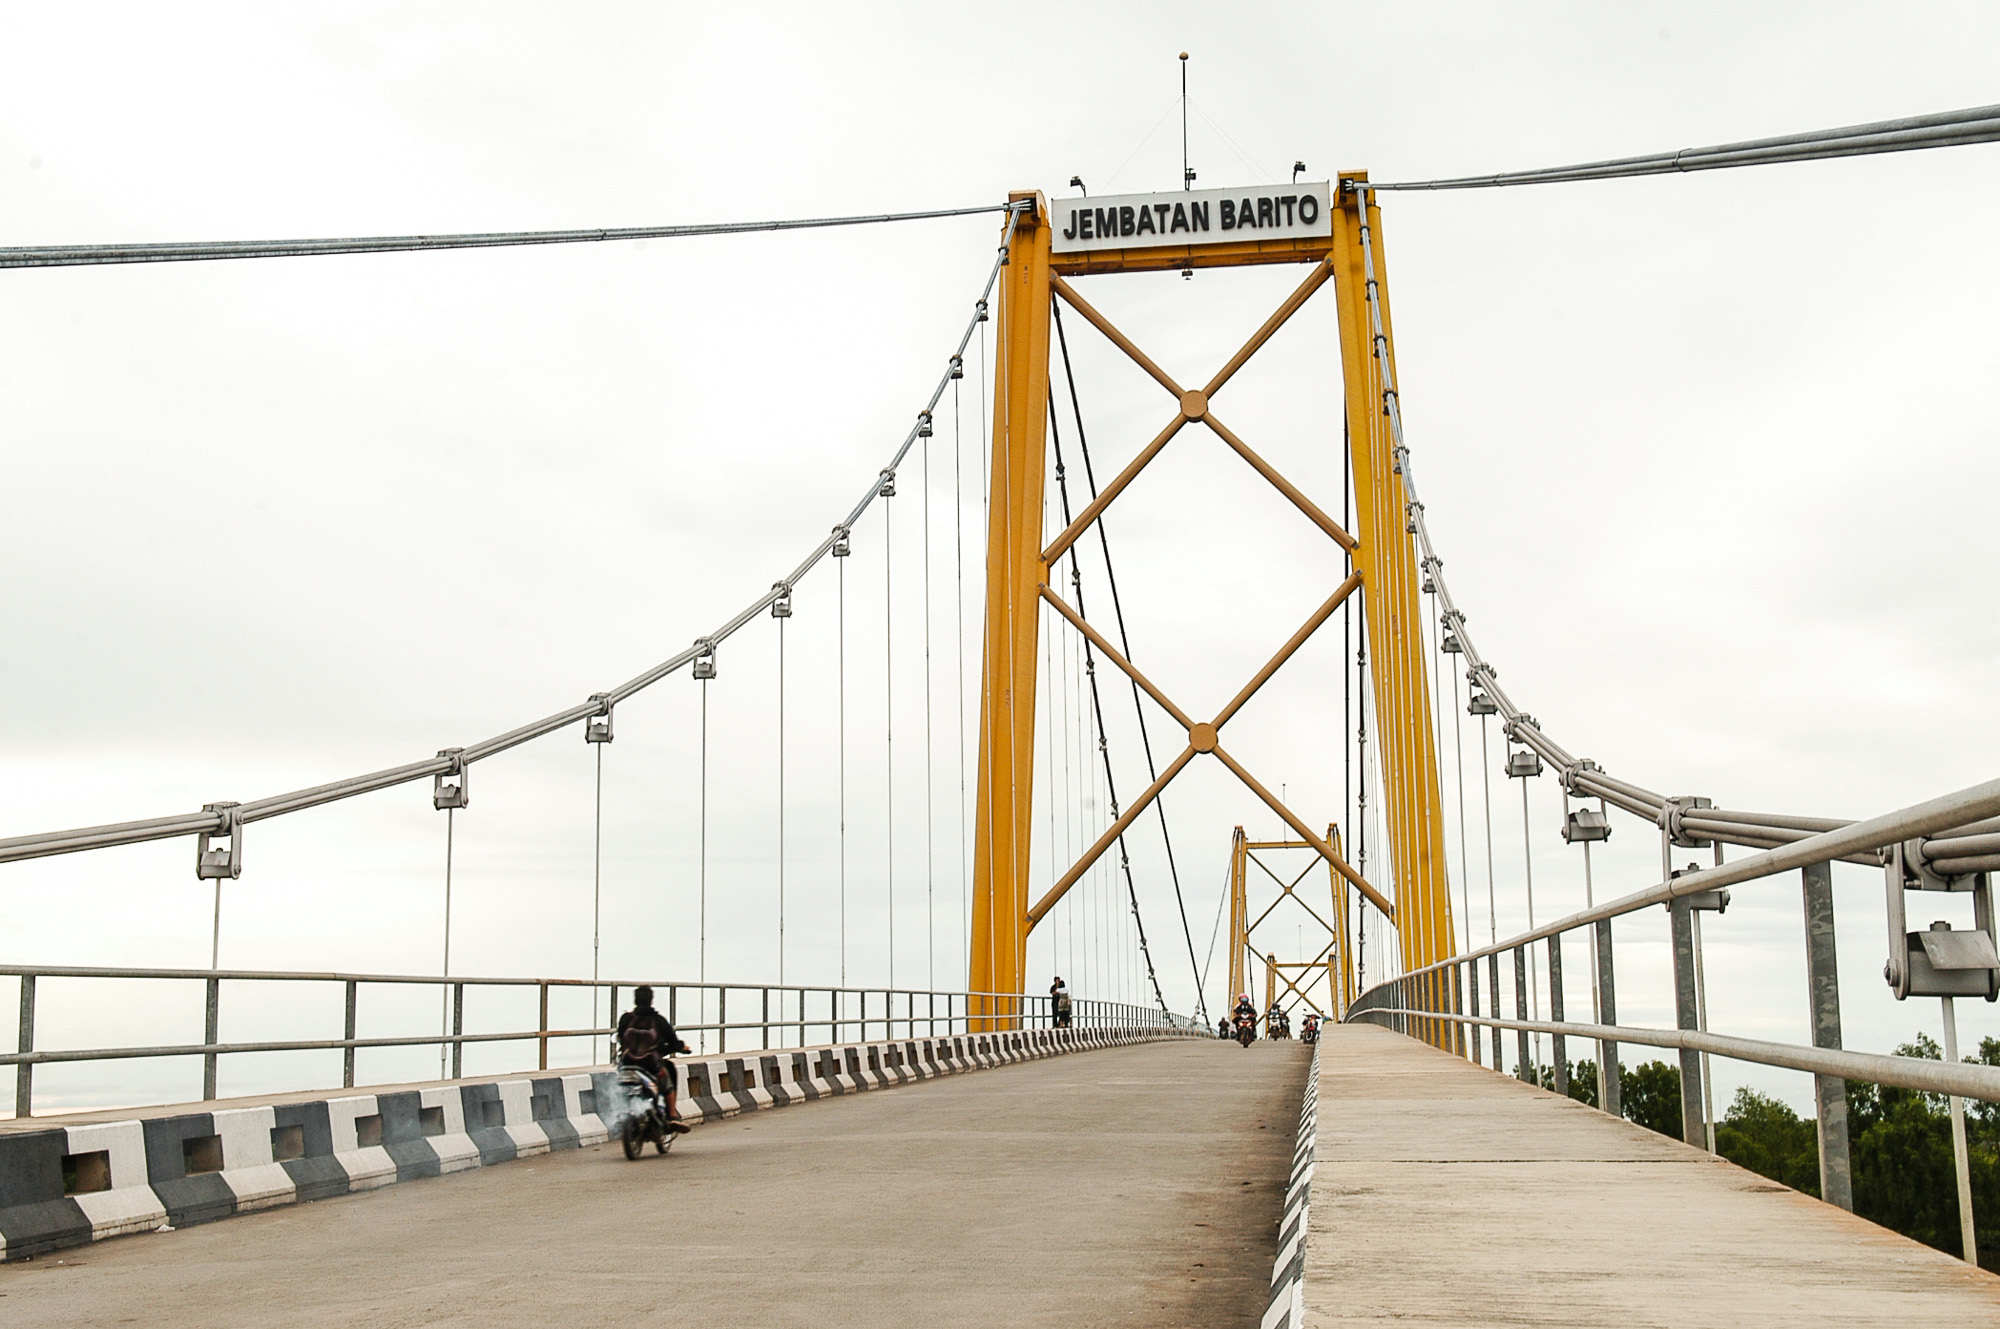 Melihat Keindahan Alam Dari Atas Jembatan Barito Pesona Indonesia